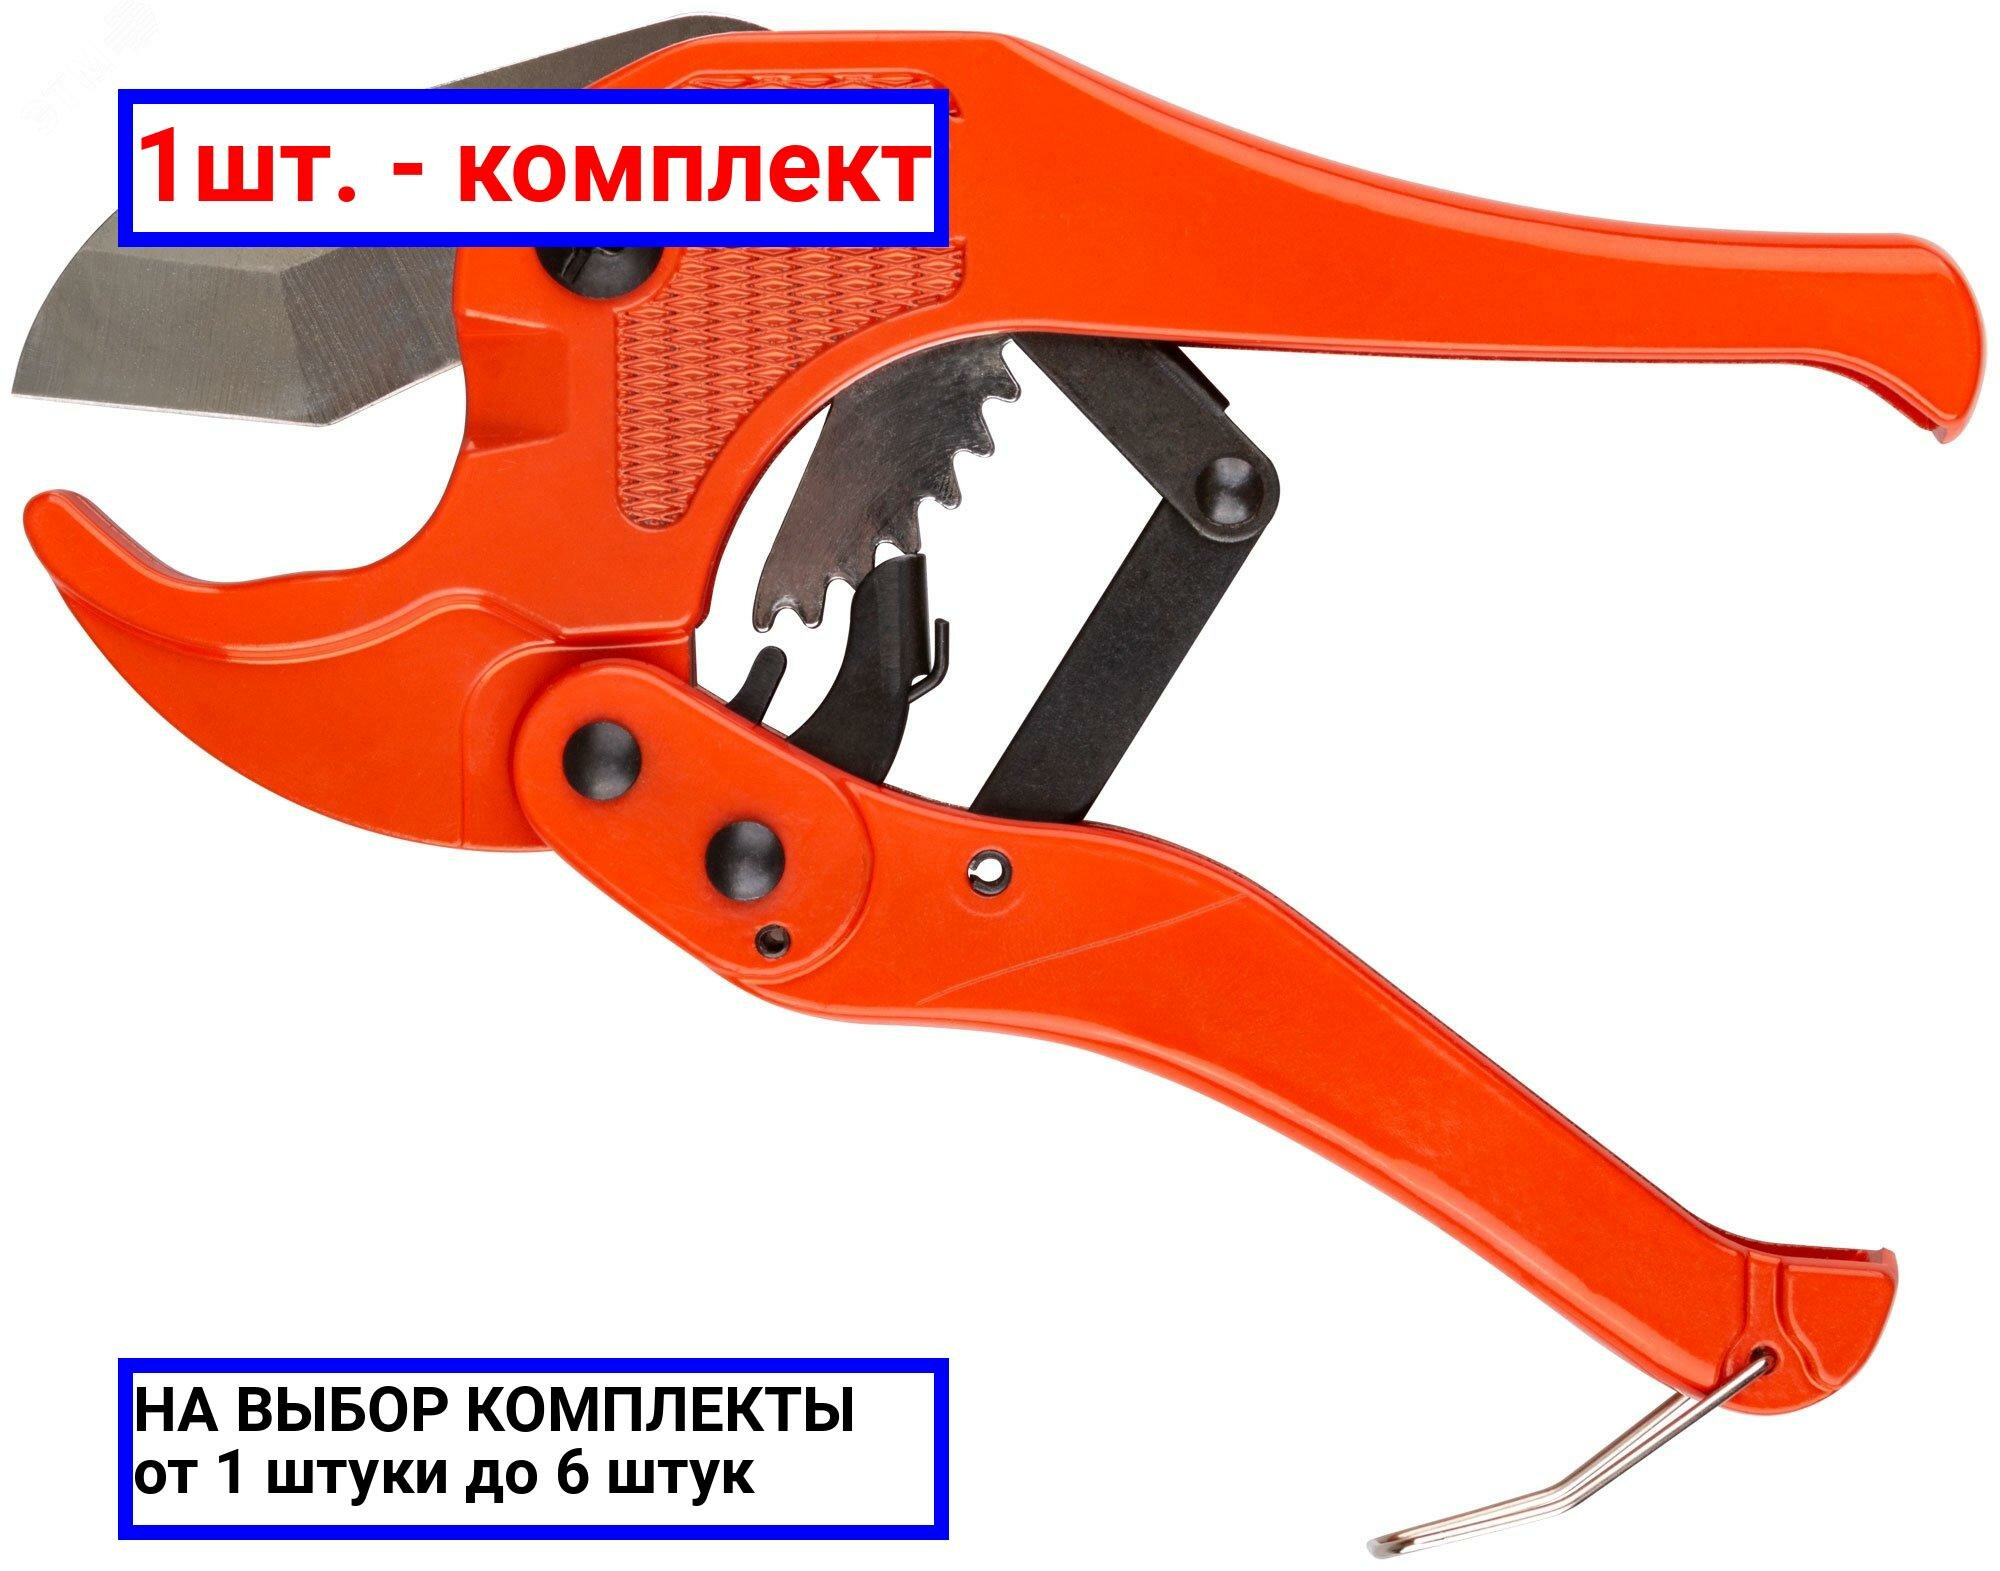 1шт. - Ножницы для металлопластиковых трубок 42 мм / FIT; арт. 70980; оригинал / - комплект 1шт